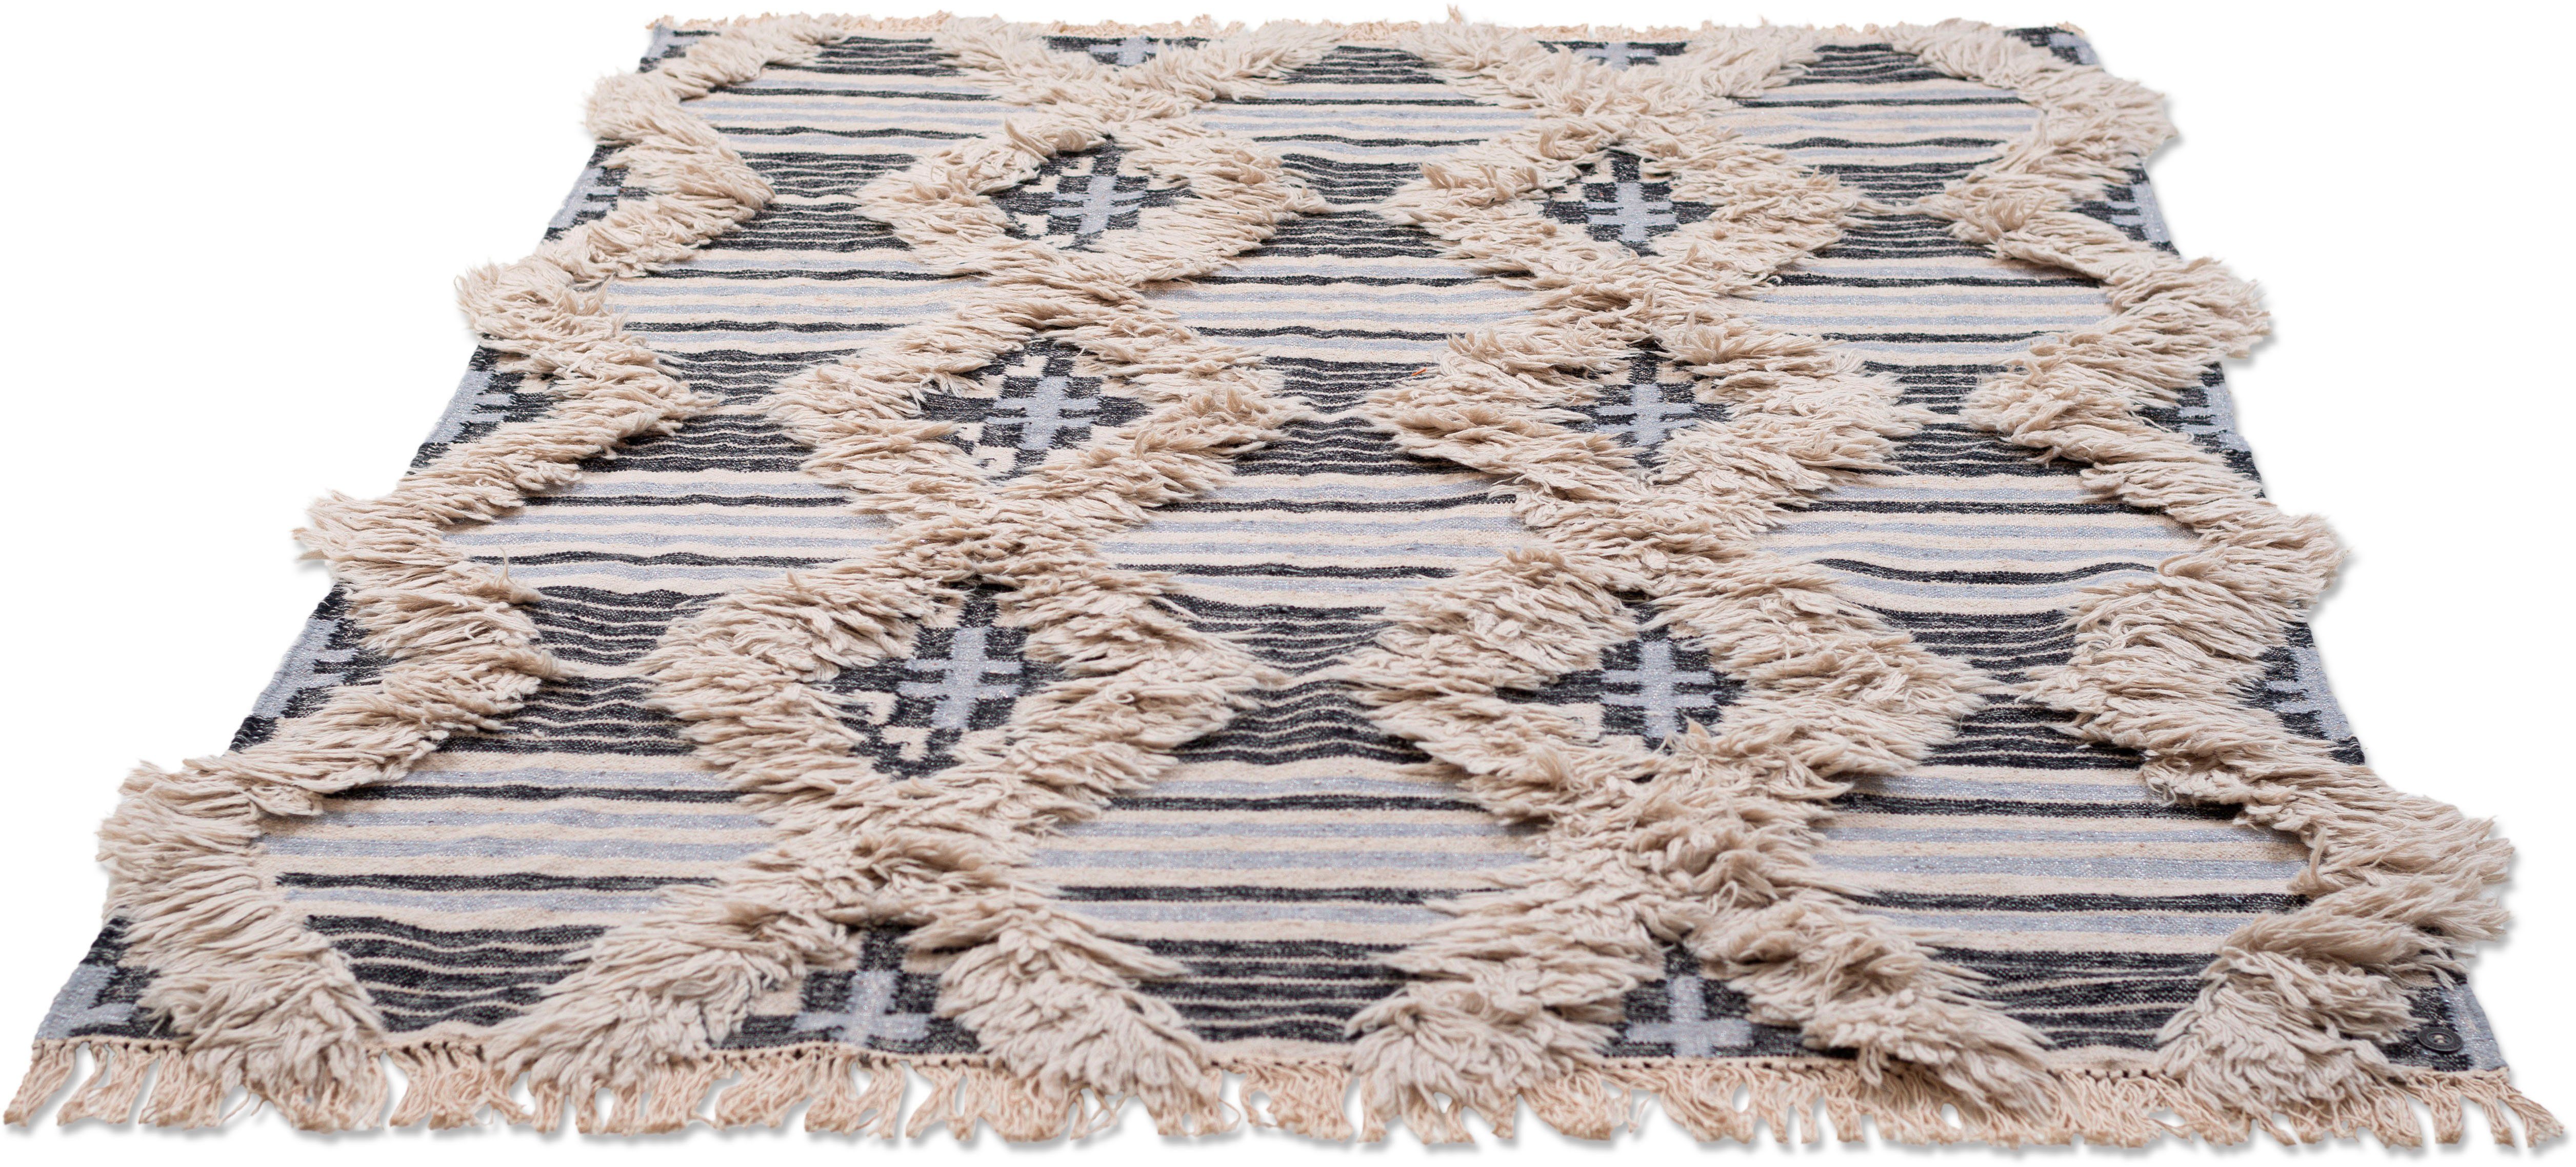 Oosterse tapijt, Cozy Kelim, Tom Tailor, rechthoekig, hoogte 5 mm, met de hand geweven